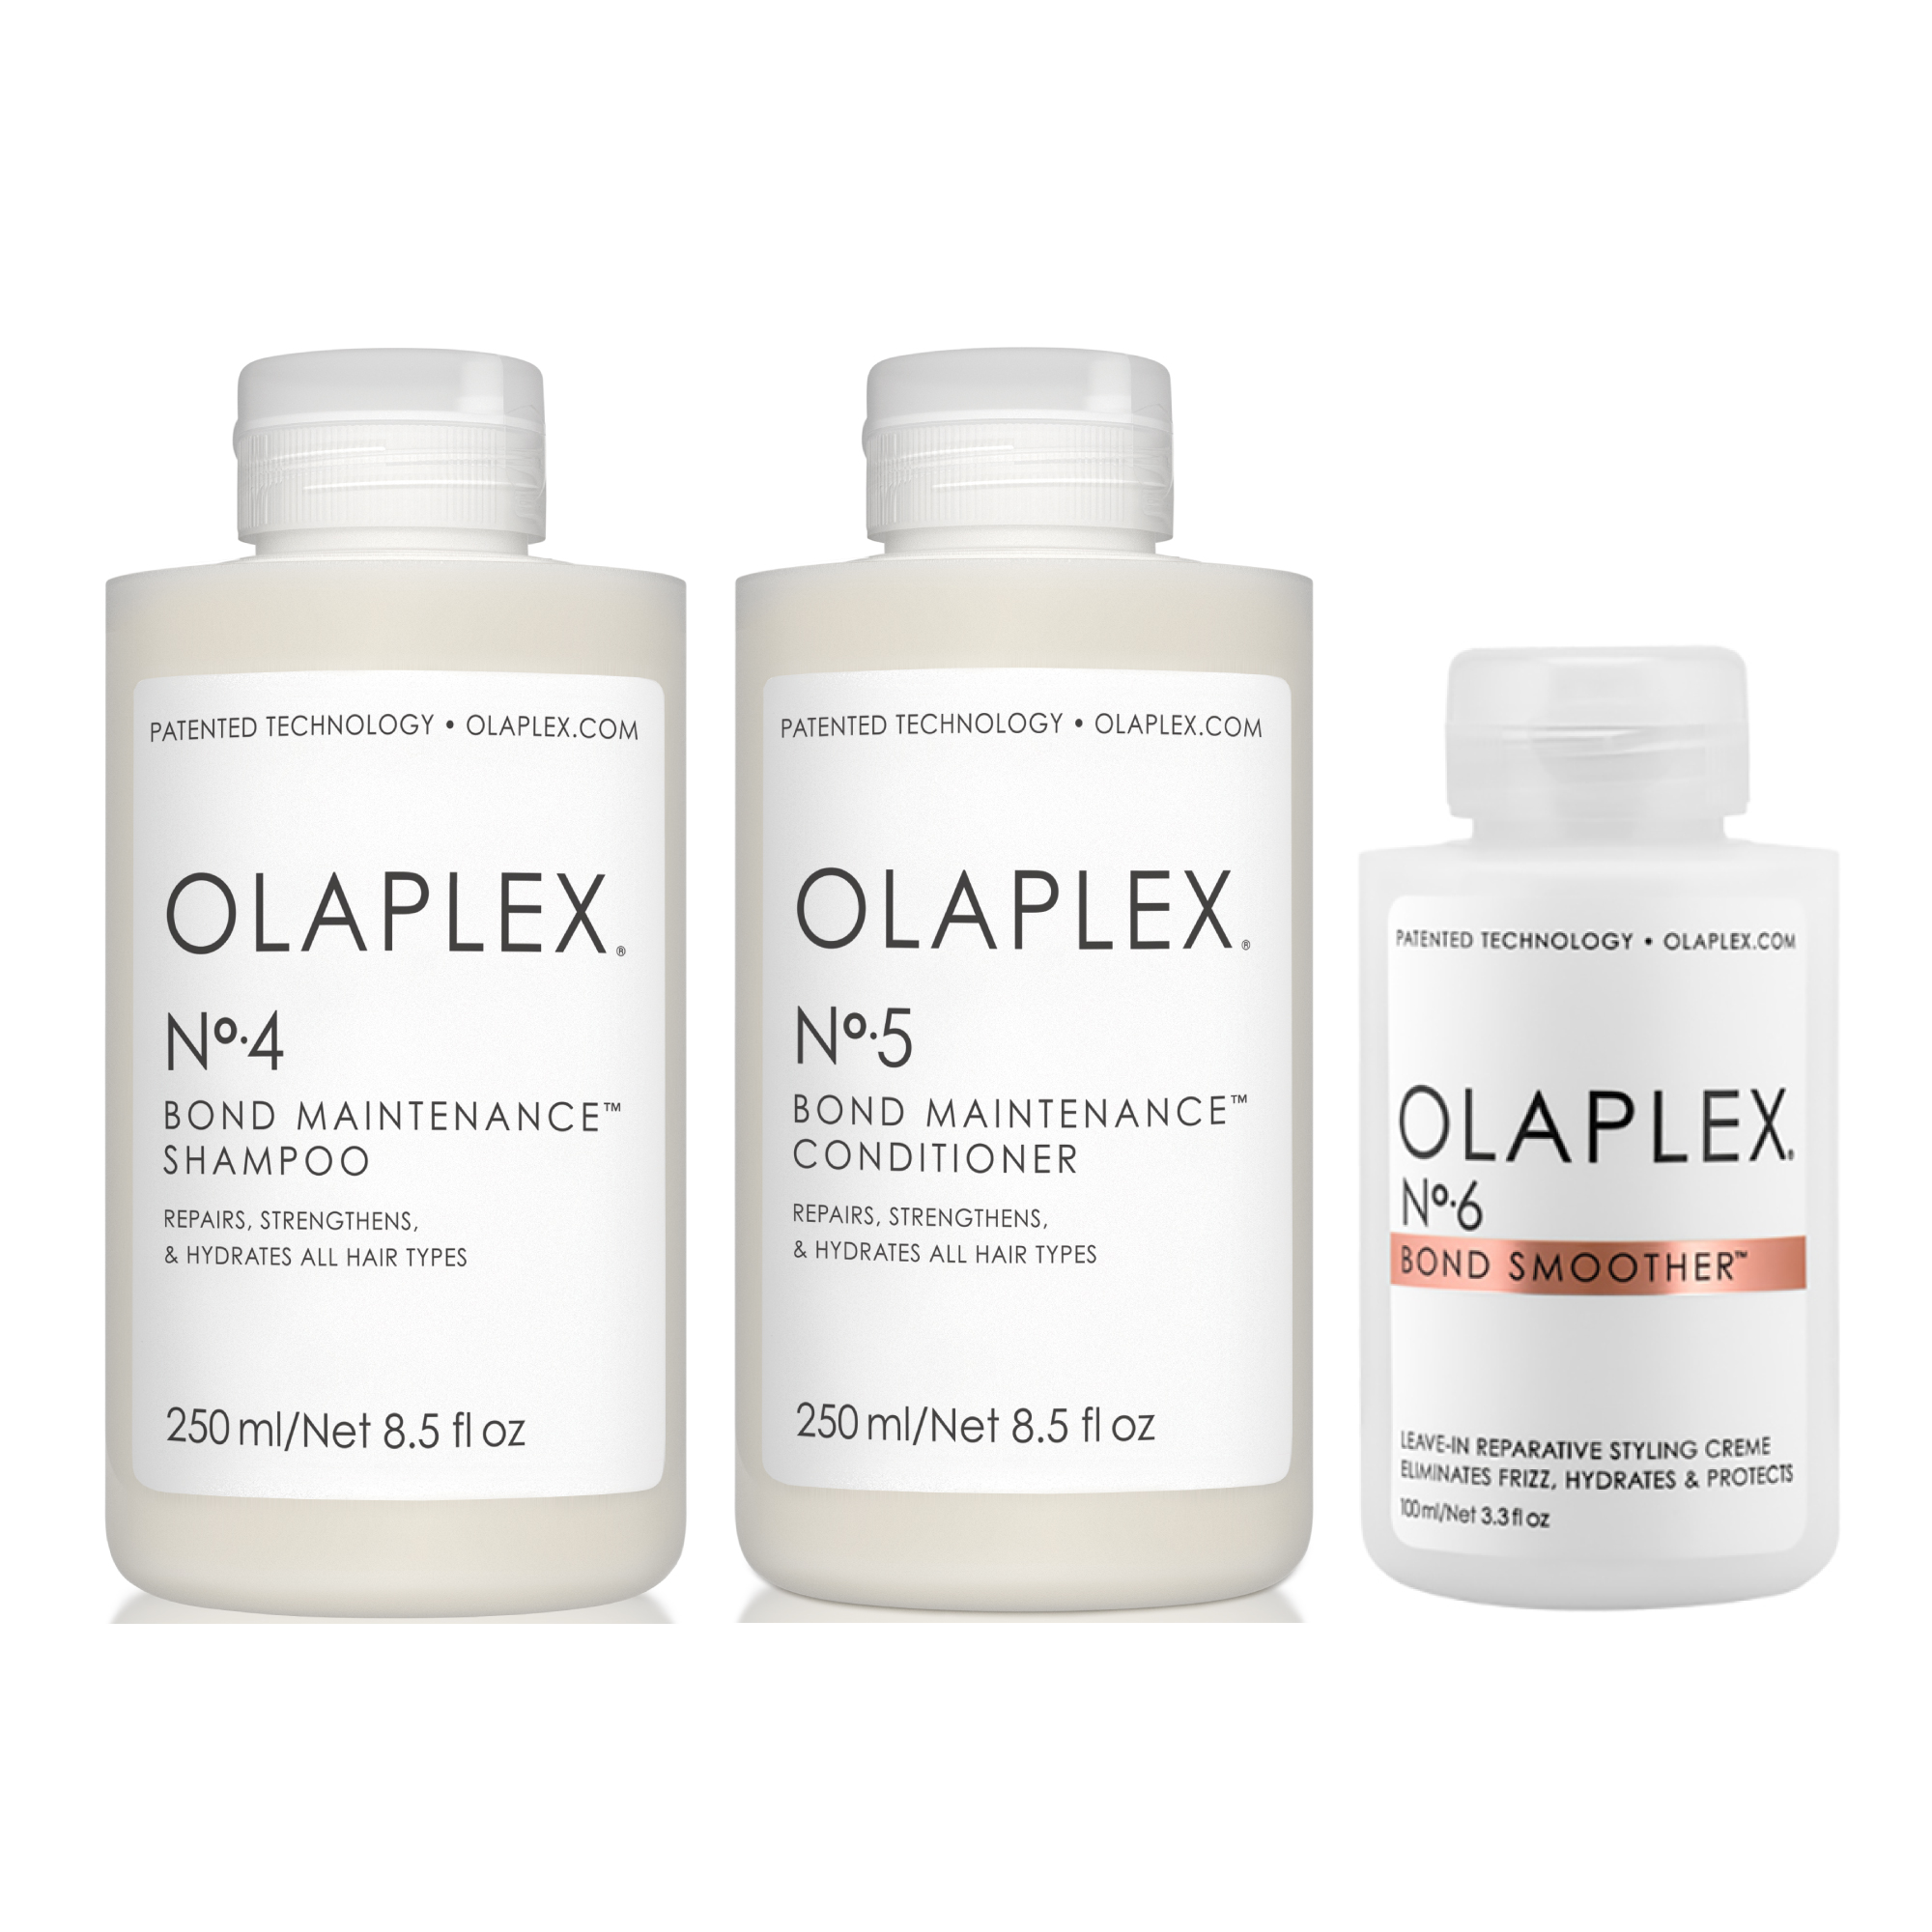 Olaplex no 4 bond maintenance shampoo rsc r2uw 2e16 2e8